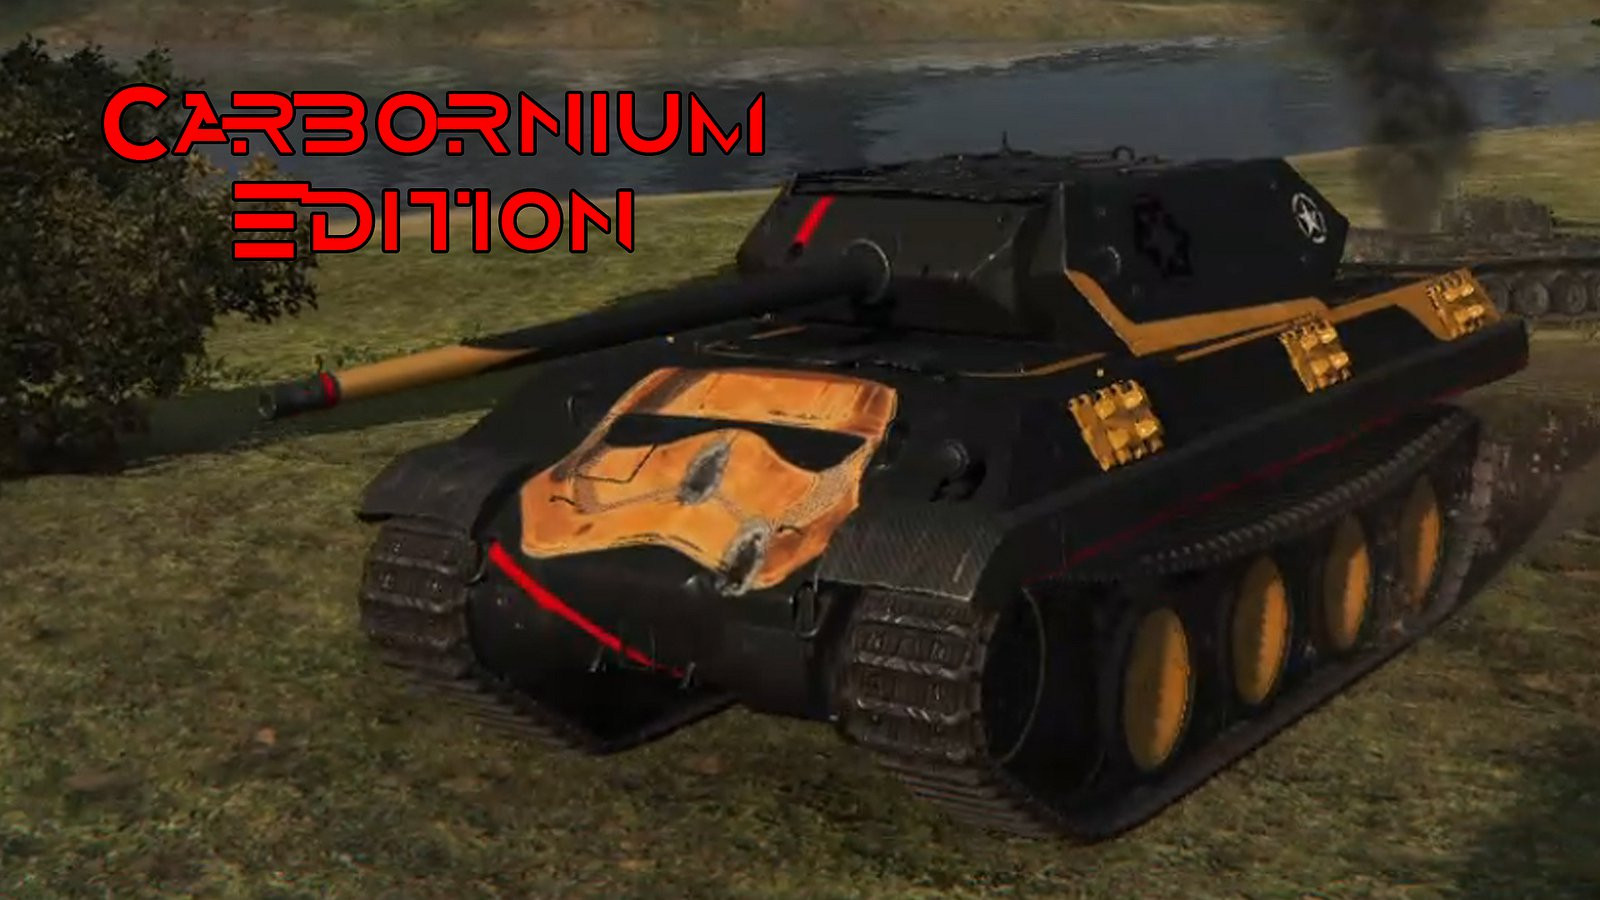 Panther M10, Carbornium Edition